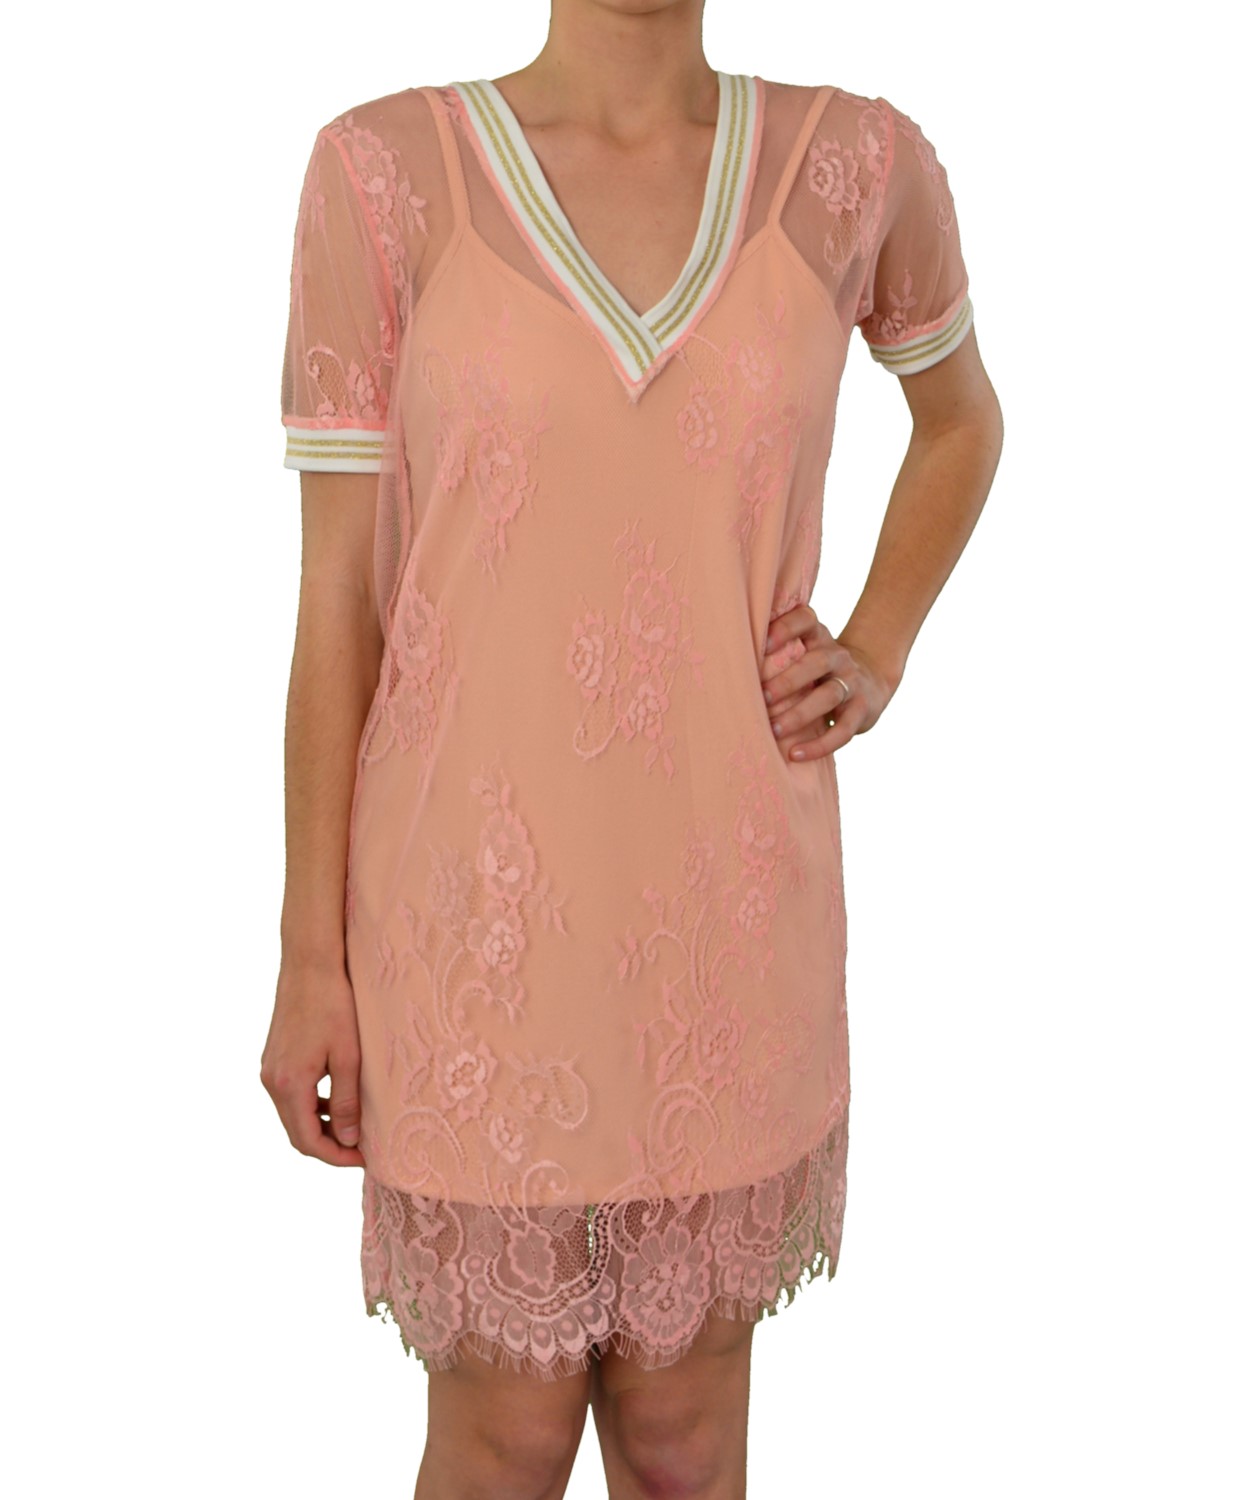 Γυναικείο φόρεμα Coocu ροζ δαντελωτό 91380Q